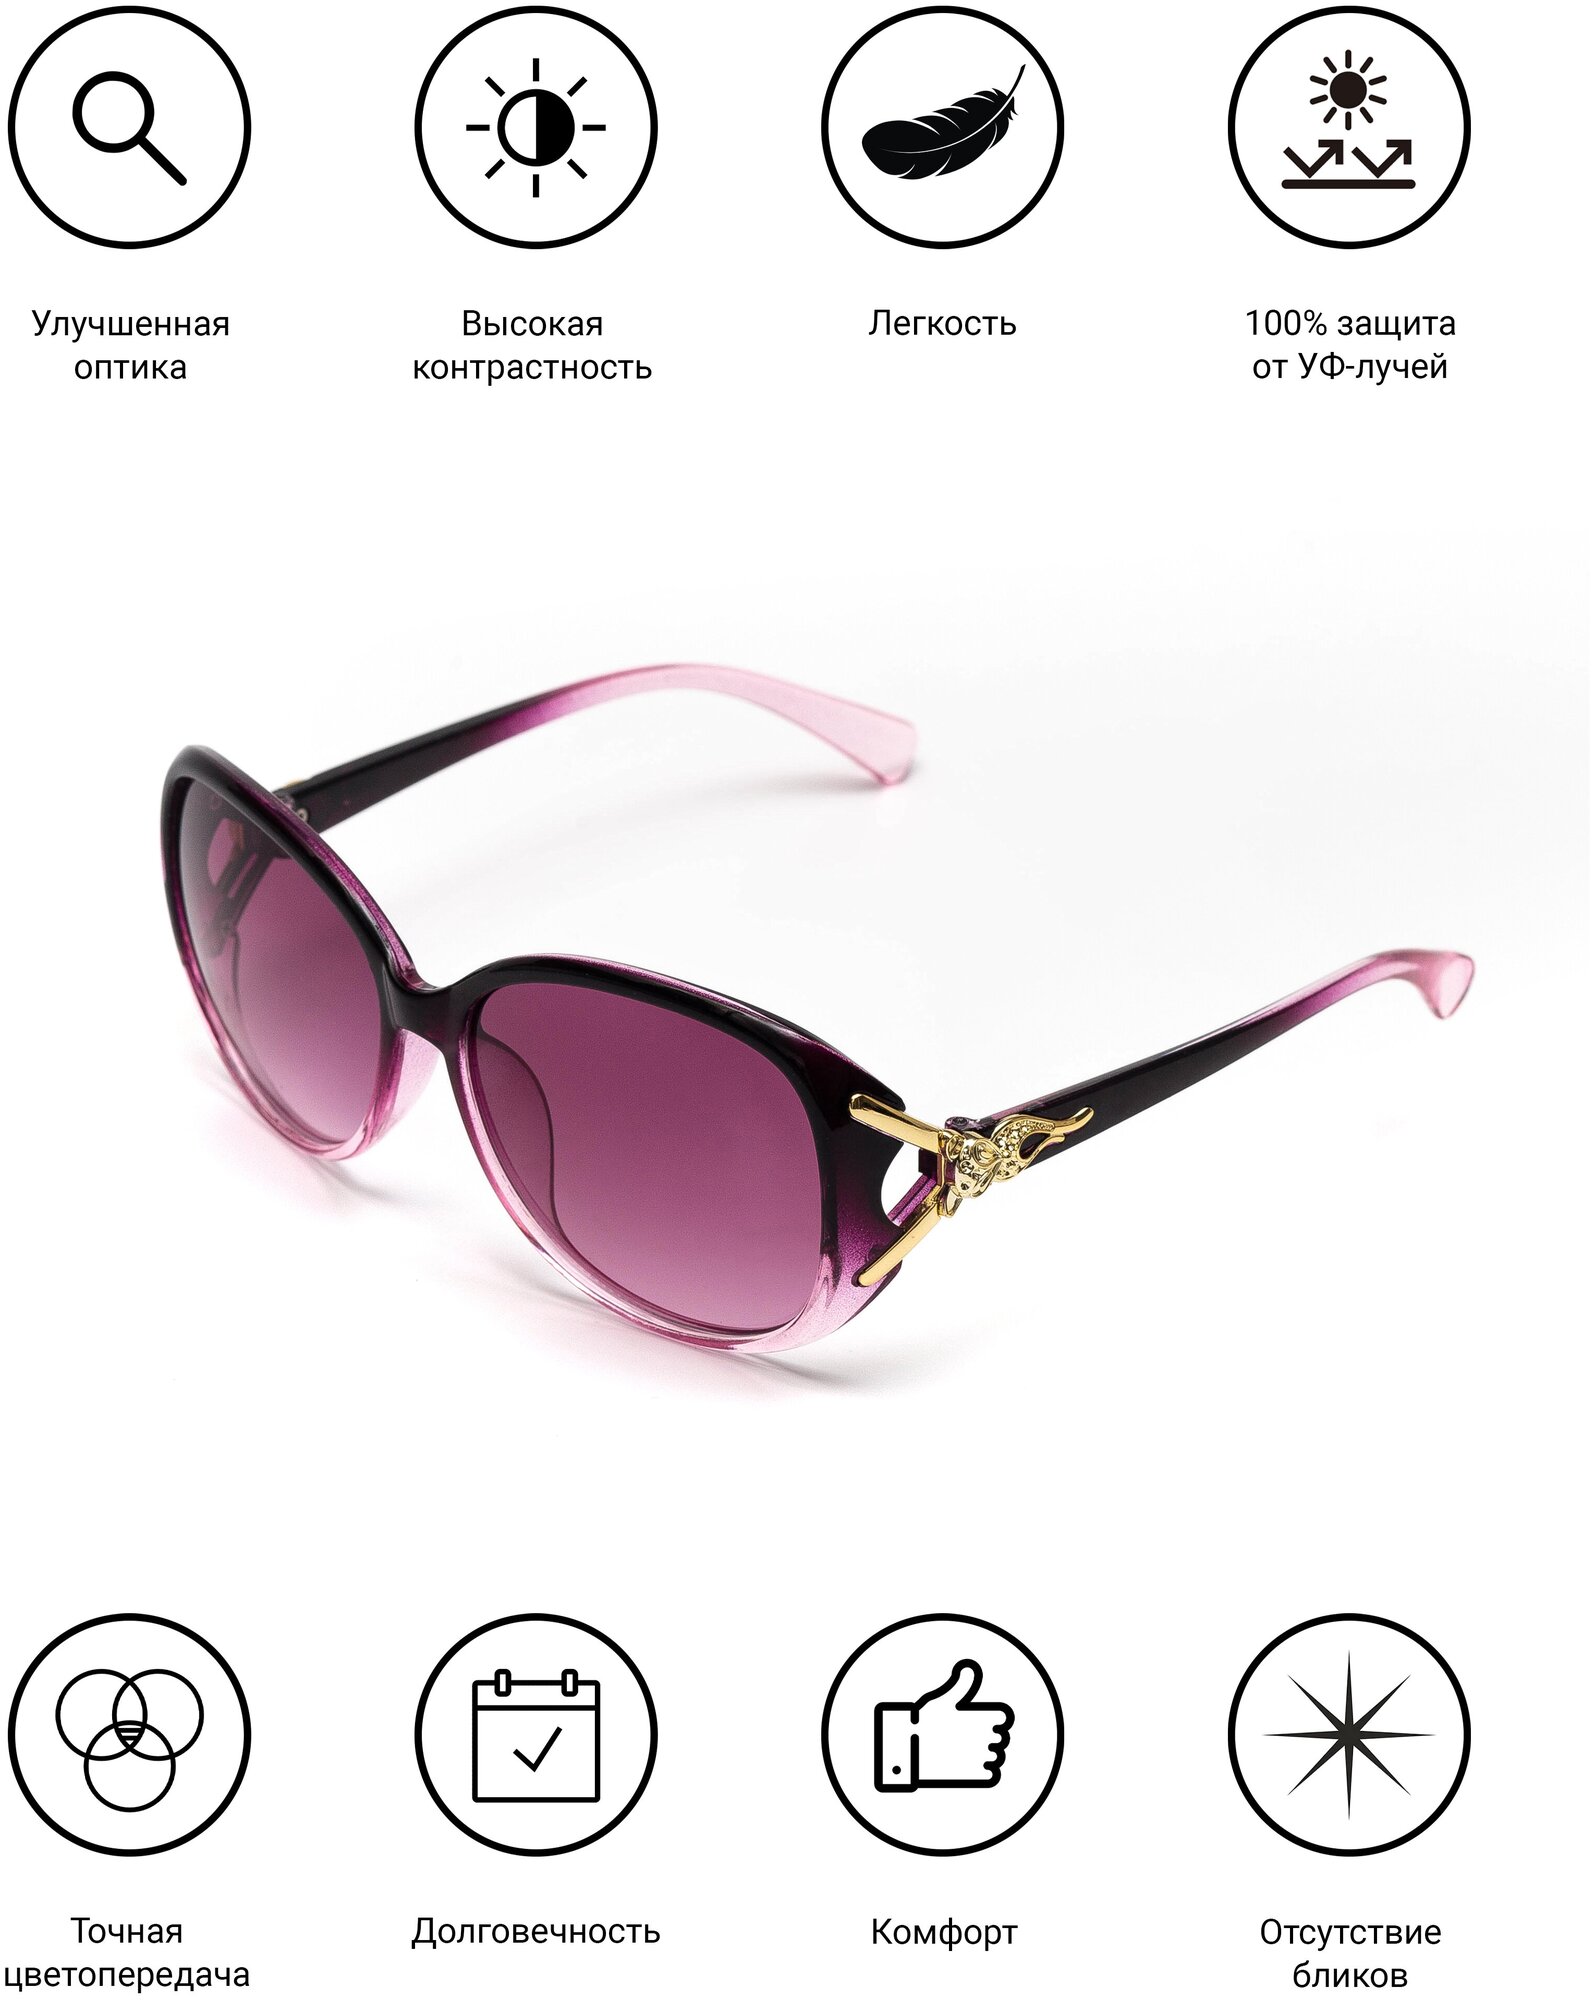 Солнцезащитные очки женские / Оправа кошачий глаз / Стильные очки / Ультрафиолетовый фильтр / Защита UV400 /Модный аксессуар/ 2009002